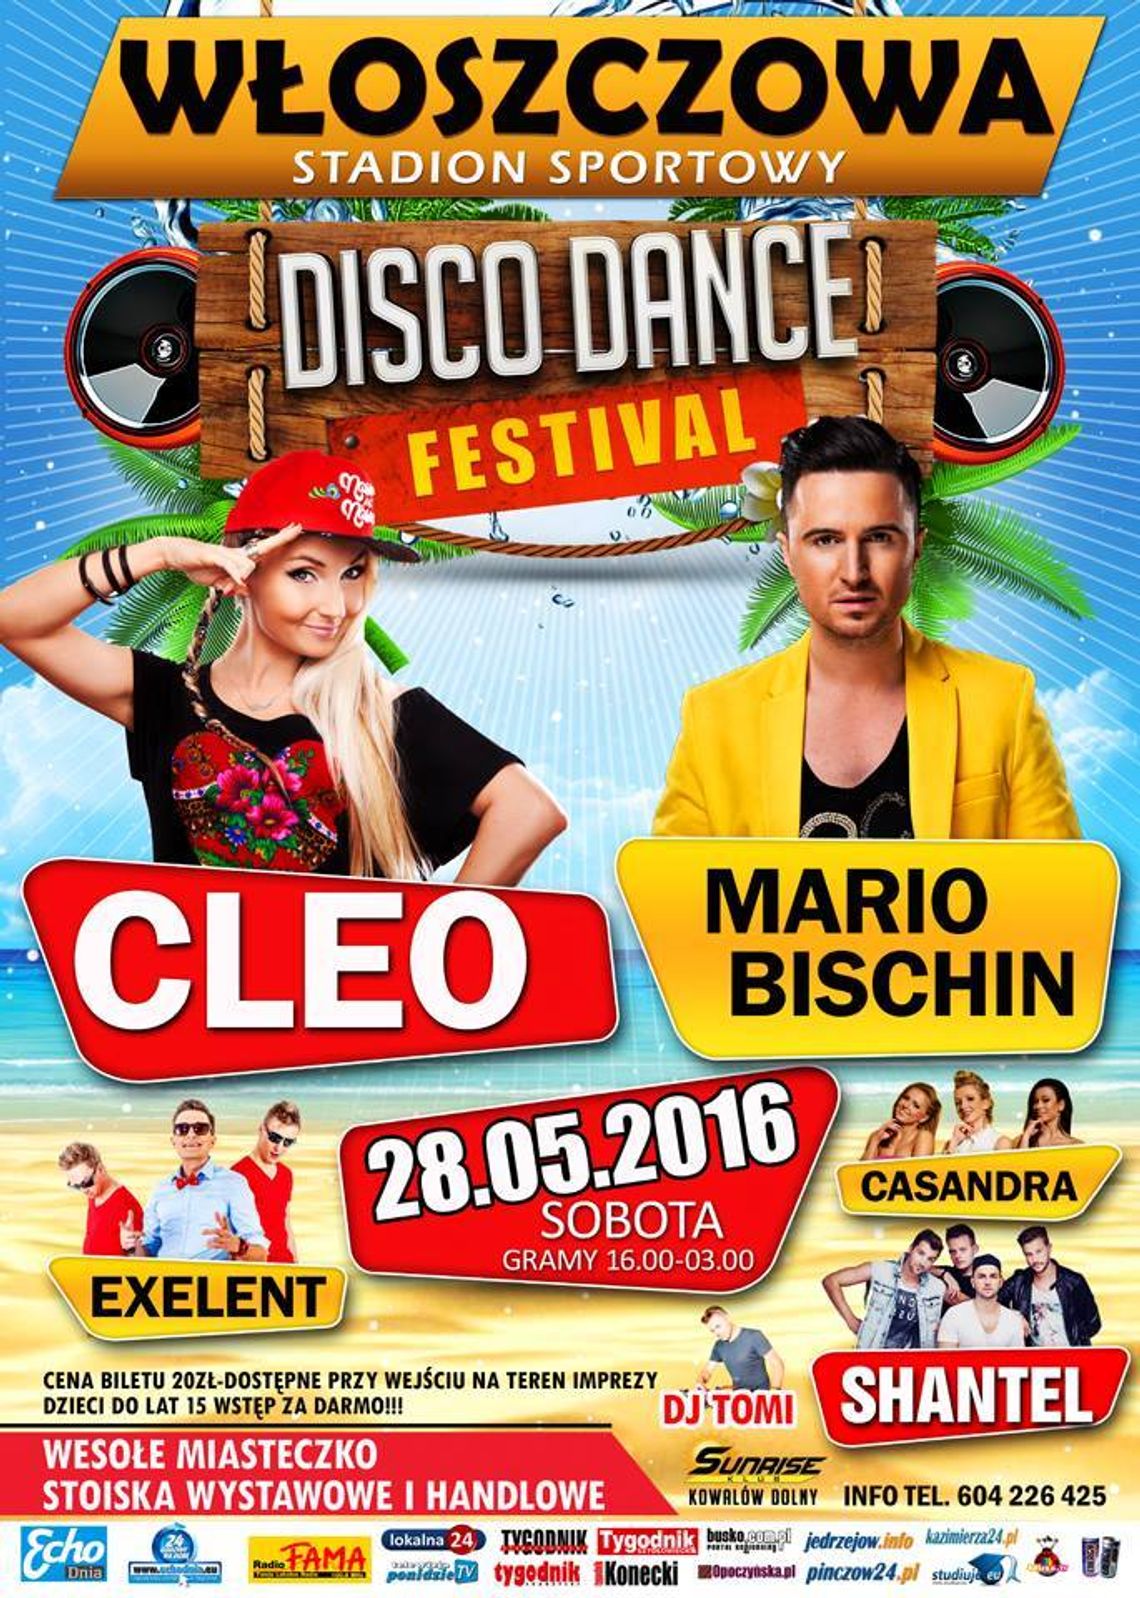 Włoszczowa Disco Dance Festival